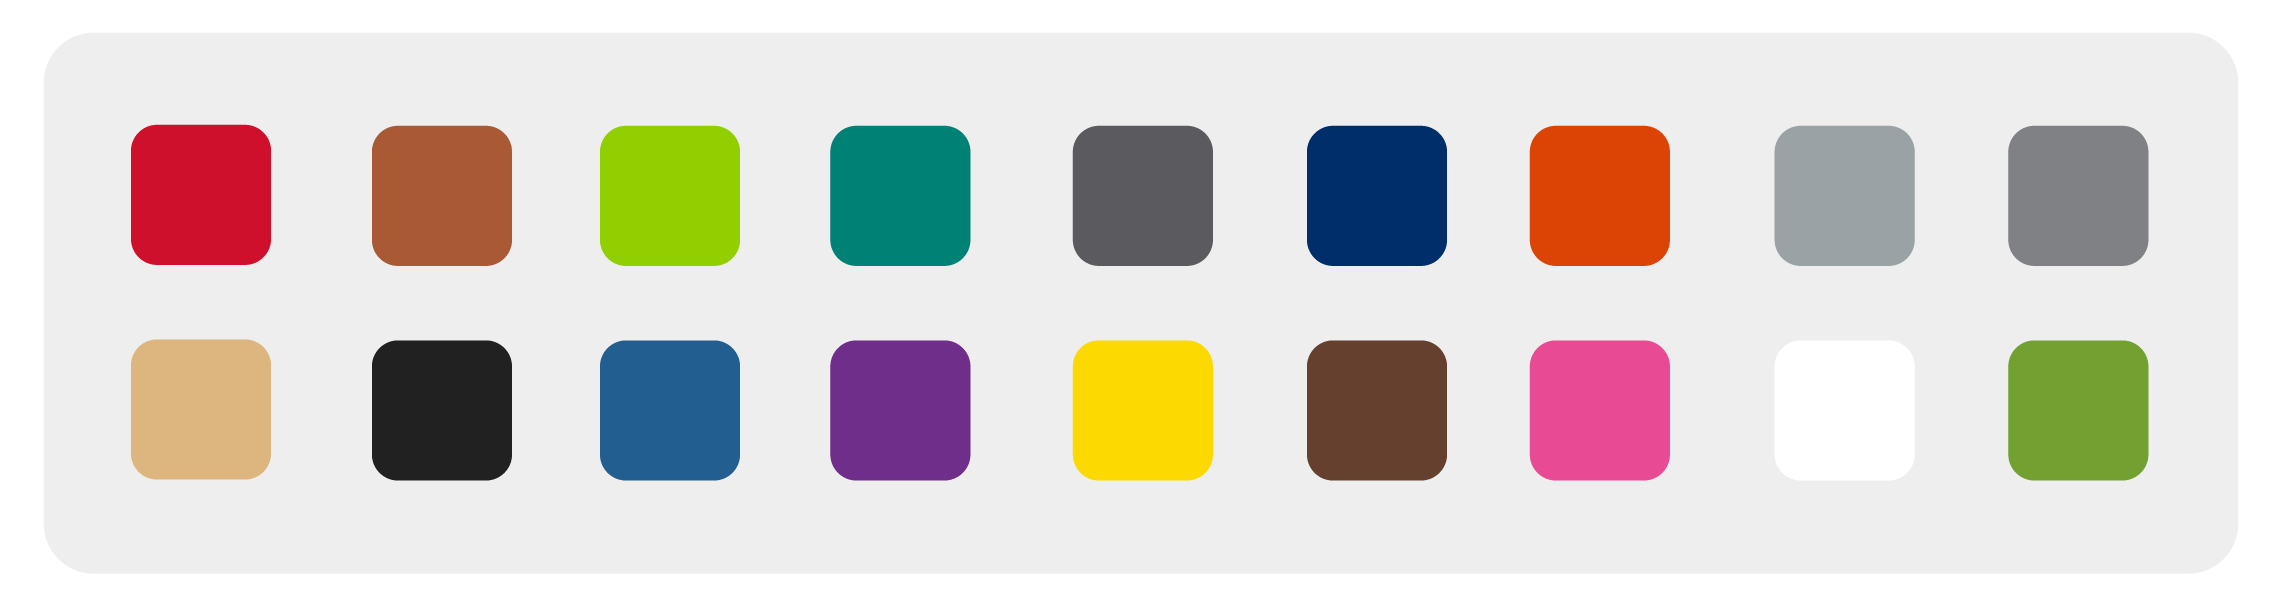 gama de colores ribtrax pro suelos modulares canarias cristalam